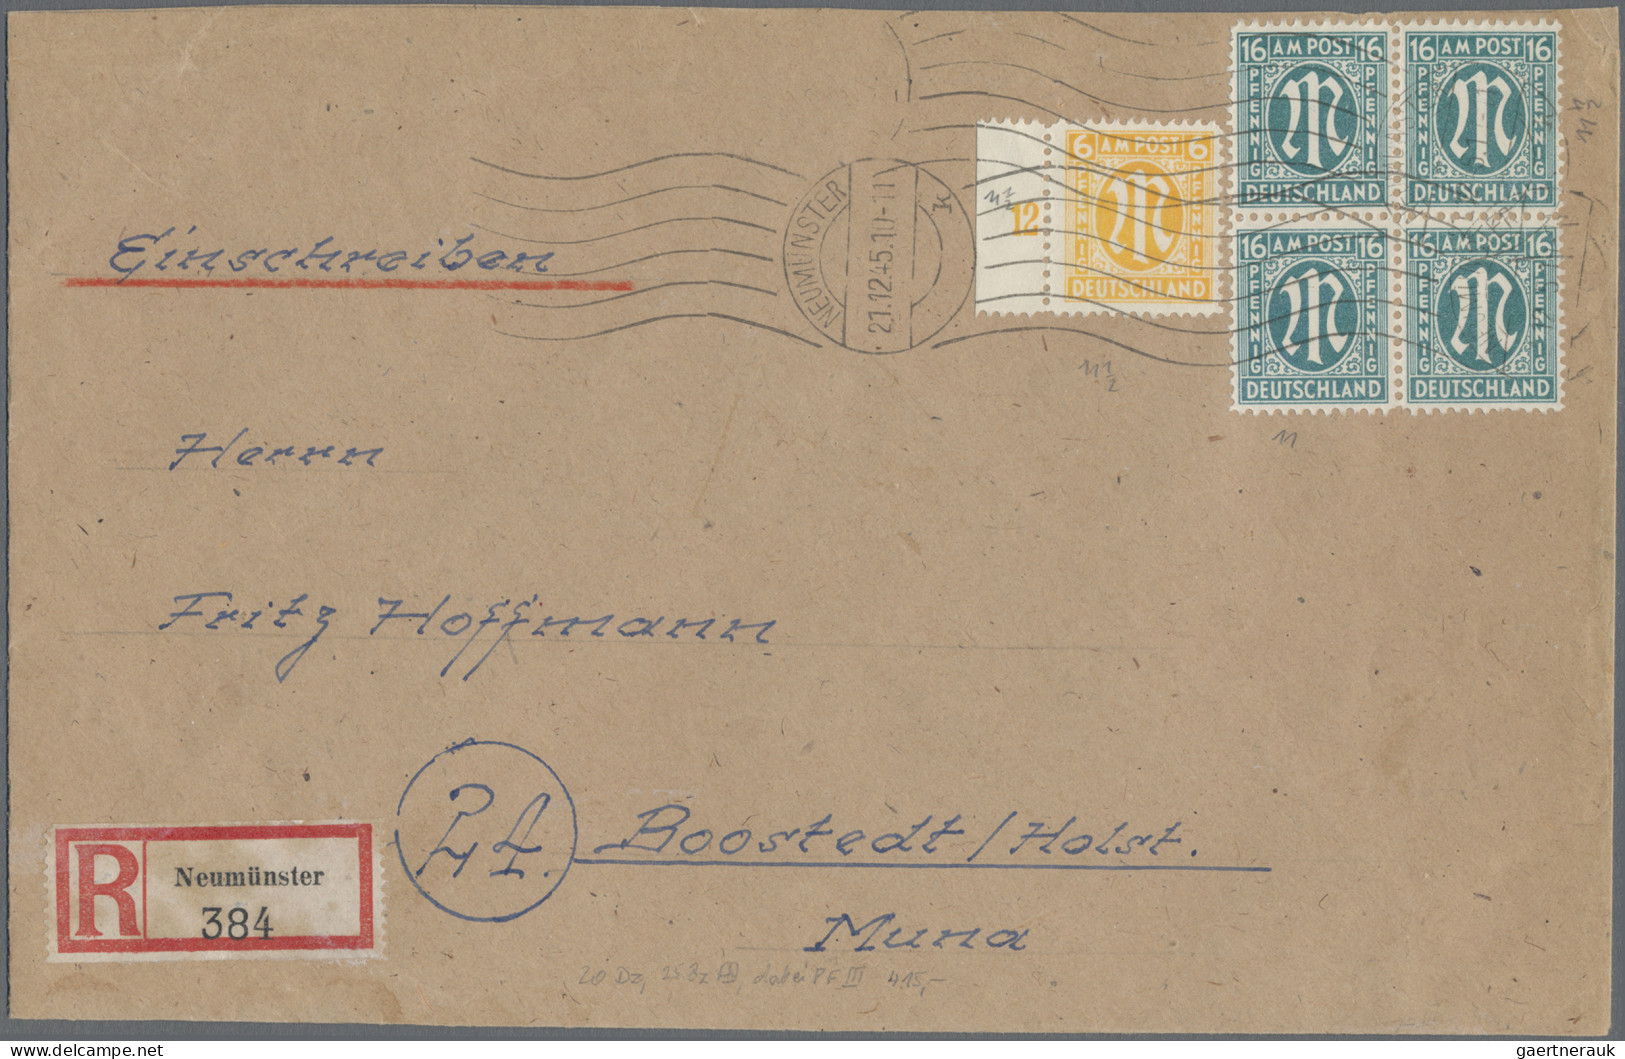 Bizone: 1945/1946, AM-Post, Sammlungspartie von 34 Belegen, dabei MiF mit Lokala